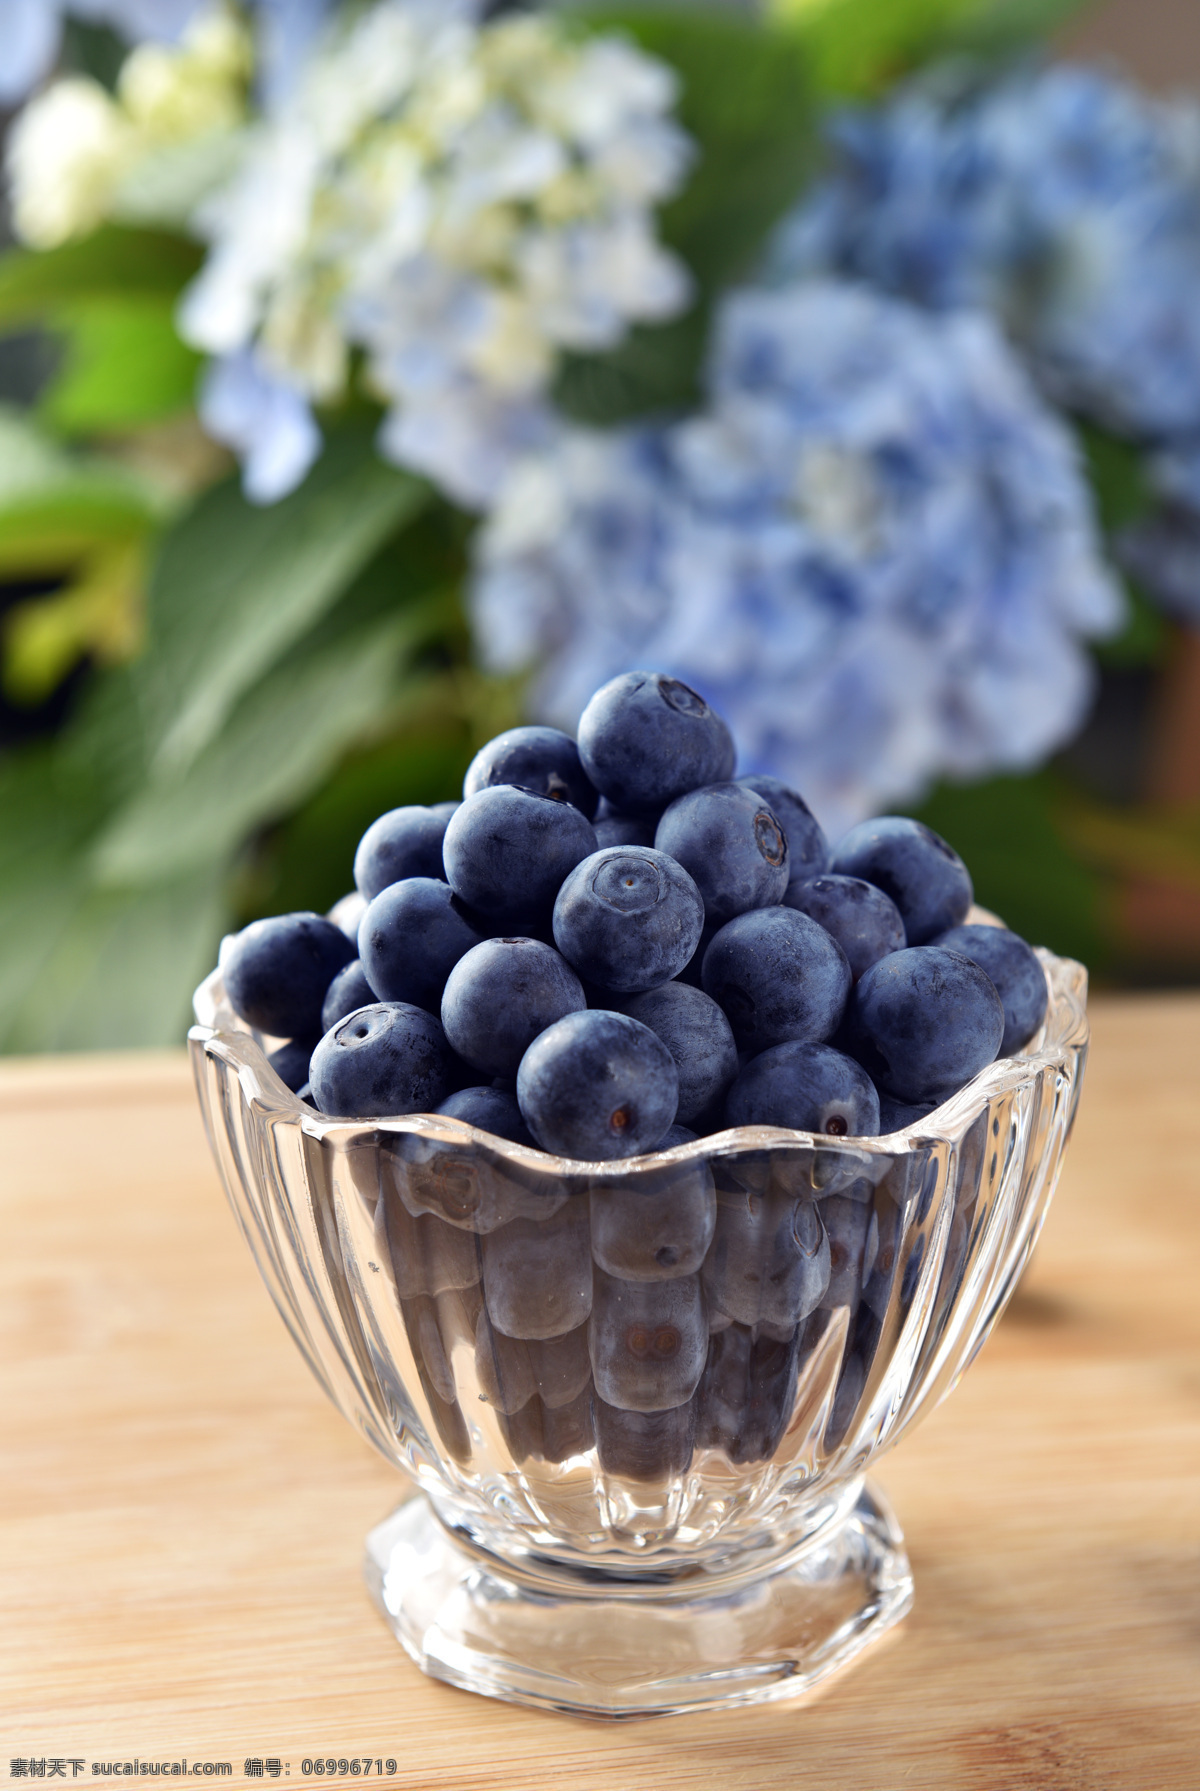 蓝莓 水果 新鲜 背景 海报 素材图片 食物 中药 类 餐饮美食